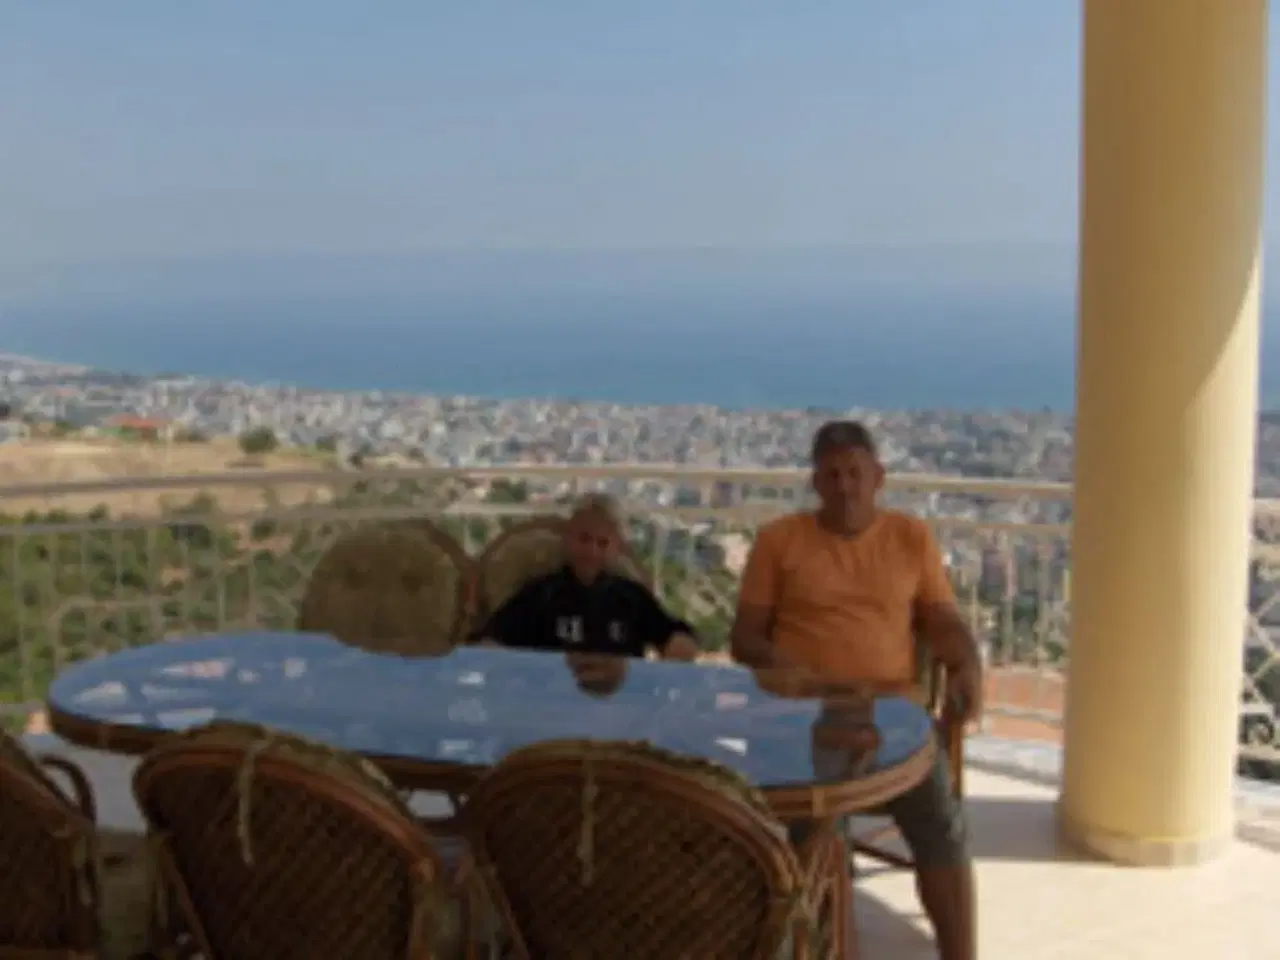 Billede 3 - Luksuslejlighed i Tyrkiet med havudsigt, 180 m2 i Alanya med 600 m2 fælles pool, 4 soveværelser, 2 b